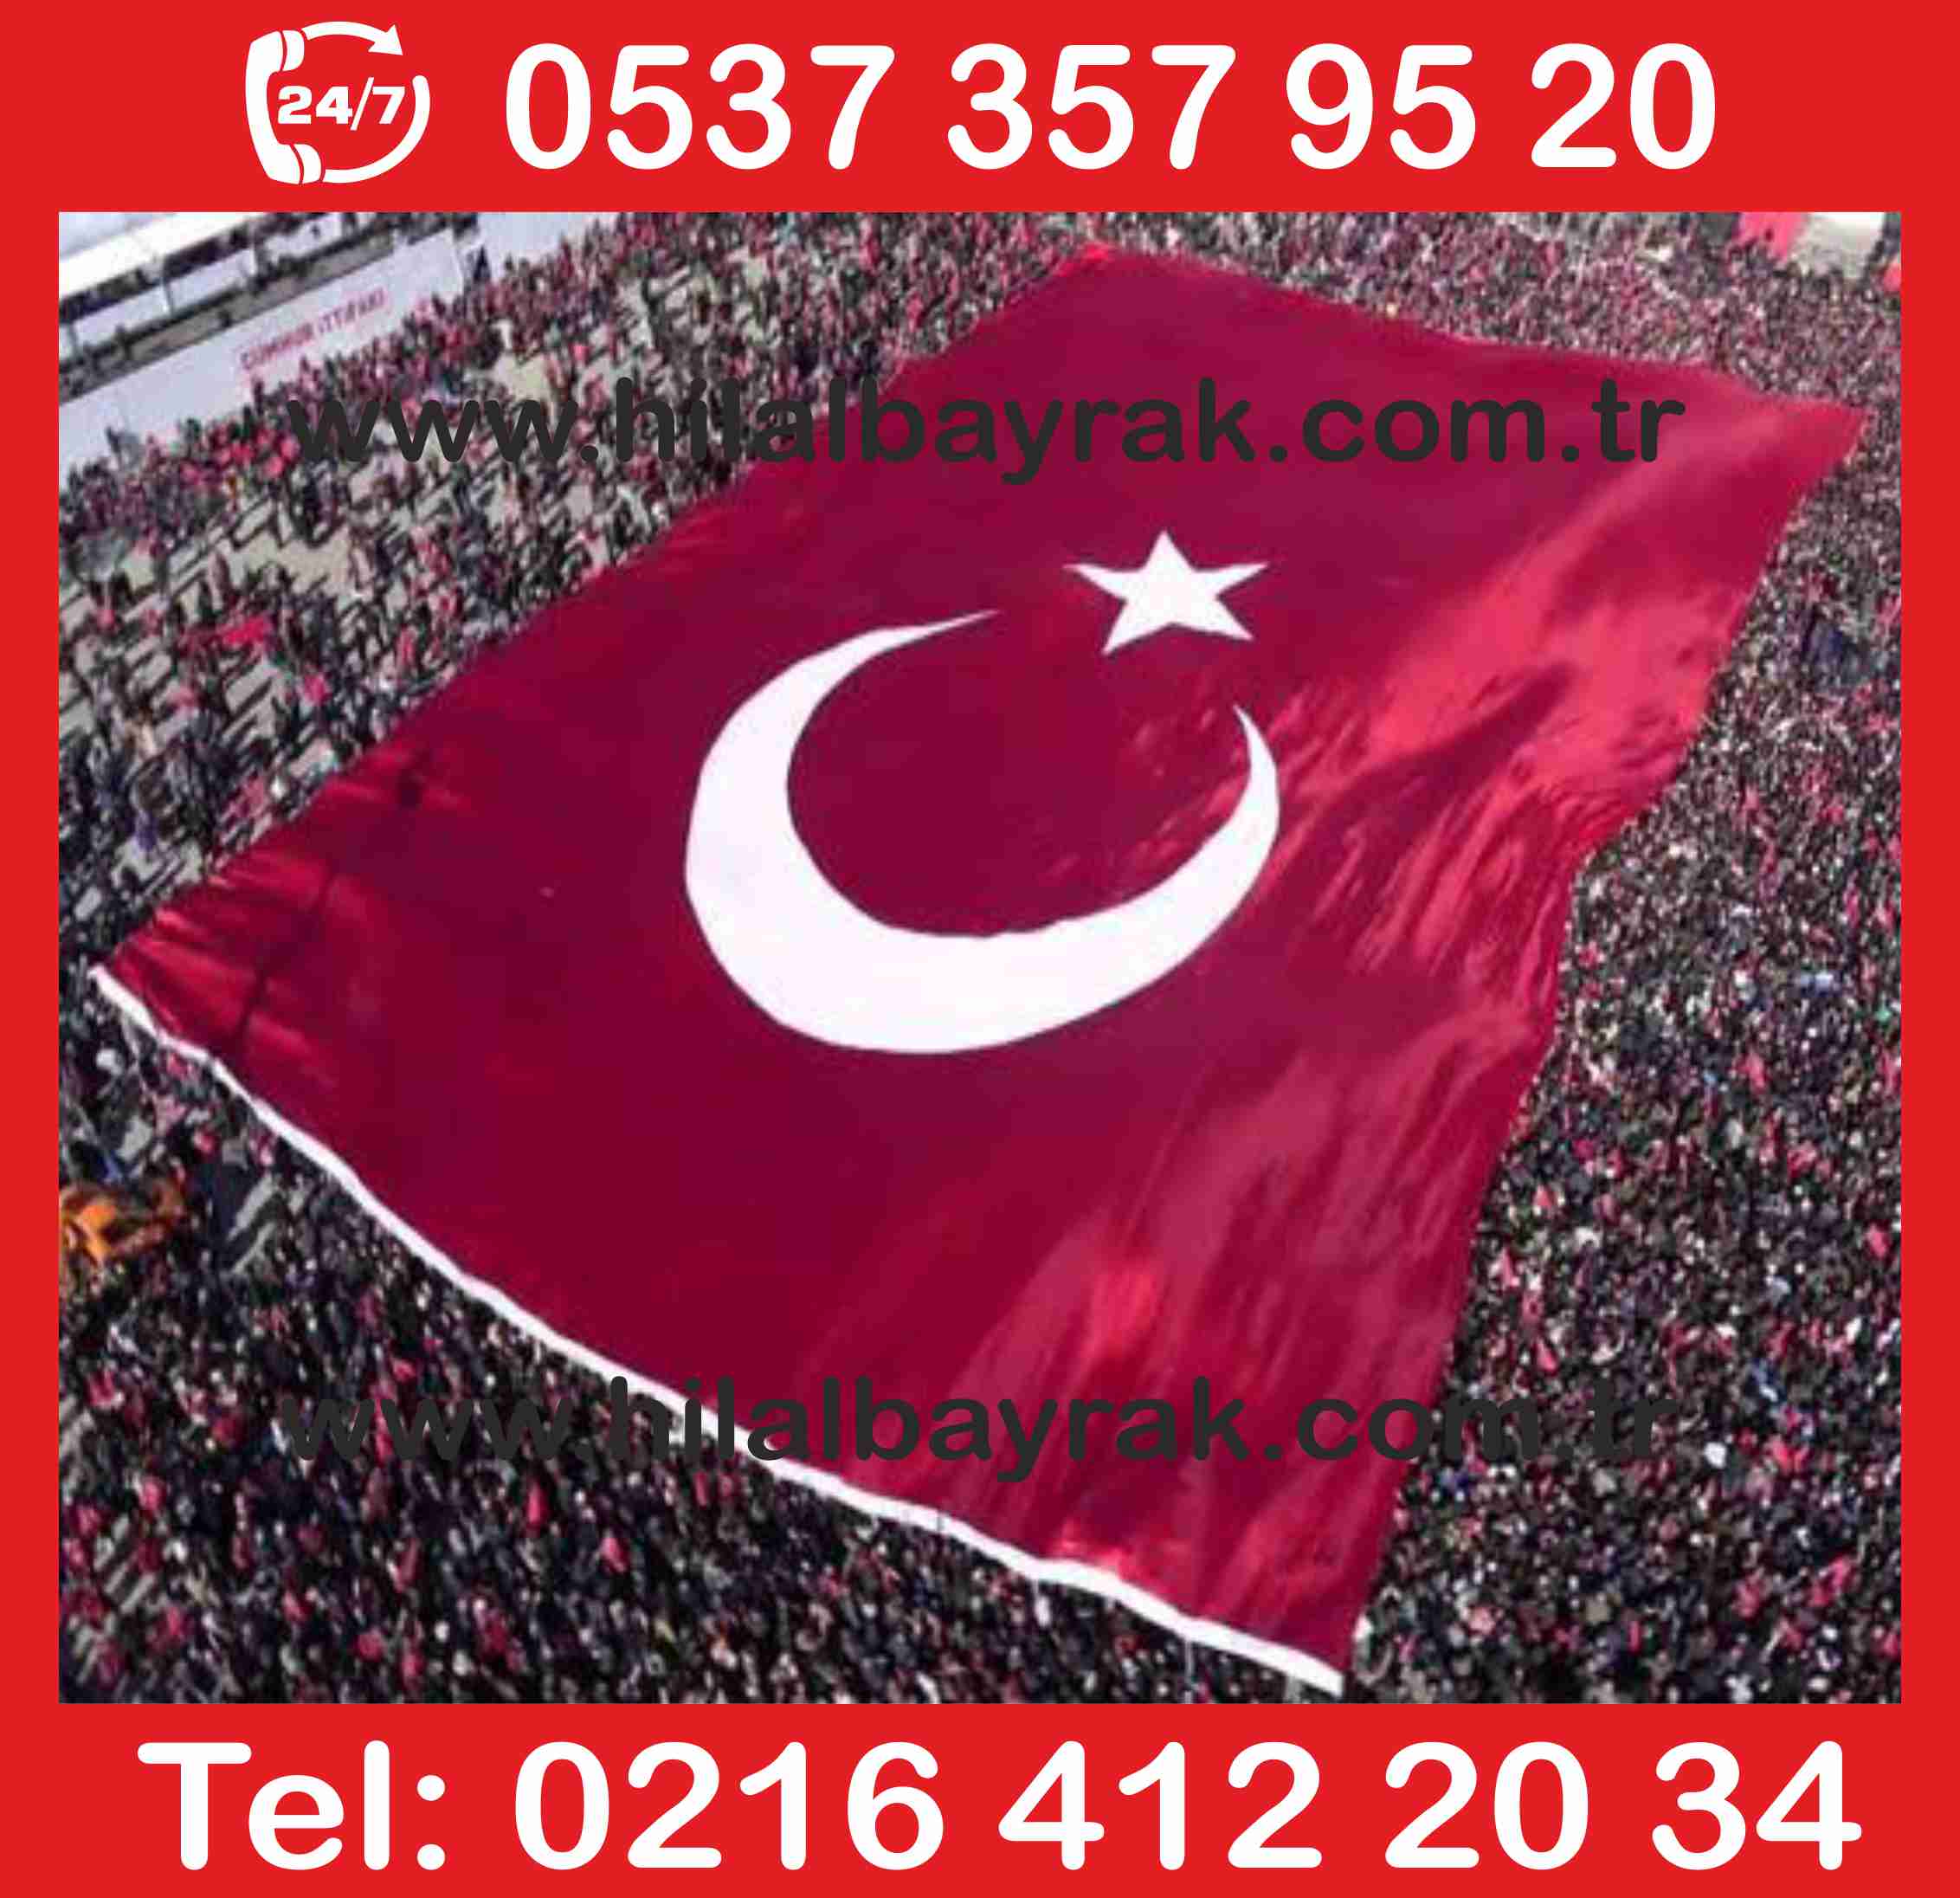 türk bayrak kadiköy Türk Bayrağı  türk bayrak Türk Bayrak satışı türk bayrak imaları türk üsküdar türk bayrak üretimi imalatı ümraniye